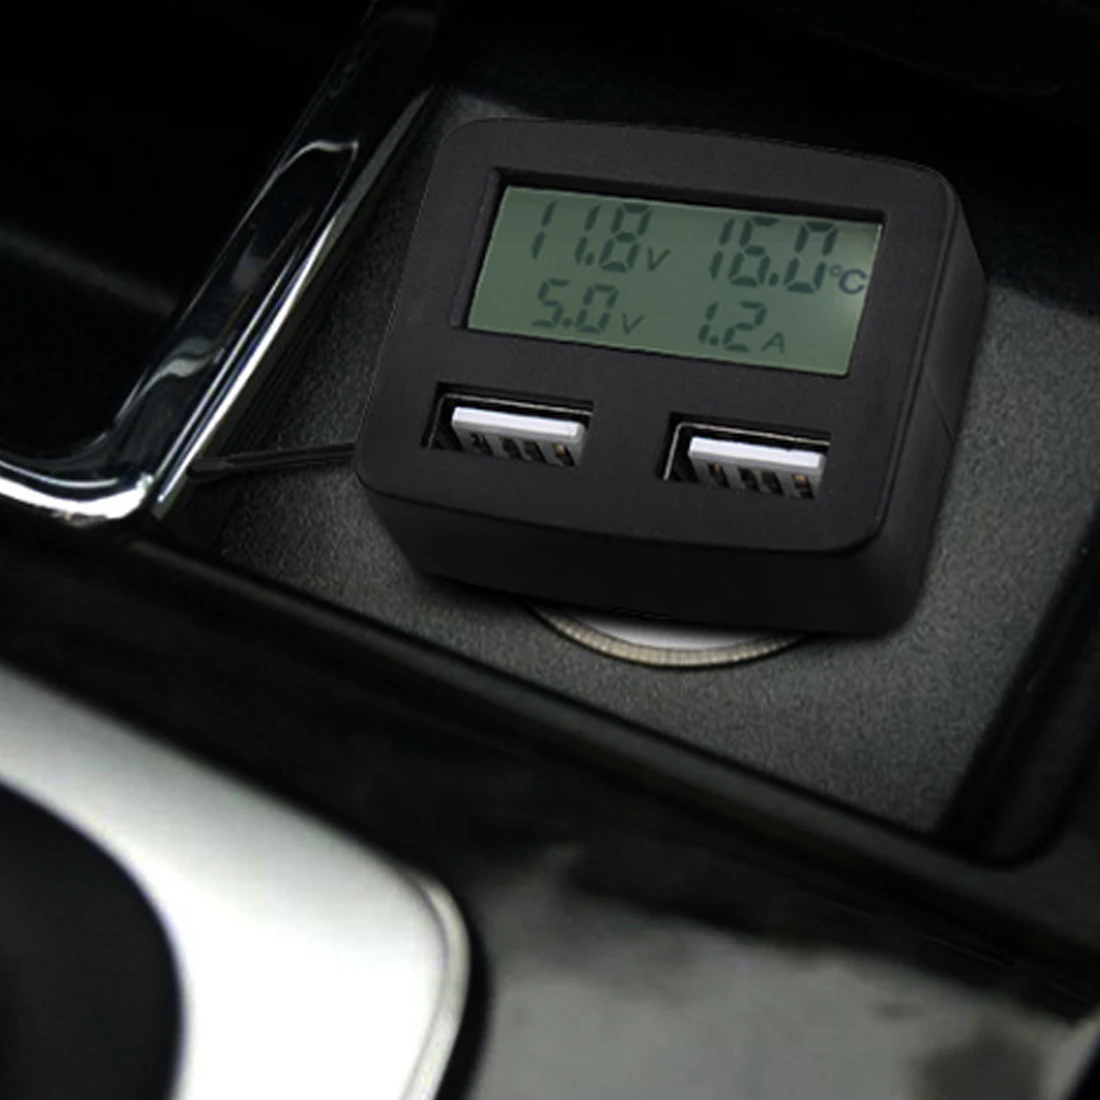 5 в 1 портативный автомобильный тестер напряжения двойной USB Автомобильное зарядное устройство вольтметр Вольт ток измеритель температуры цифровой монитор дисплей